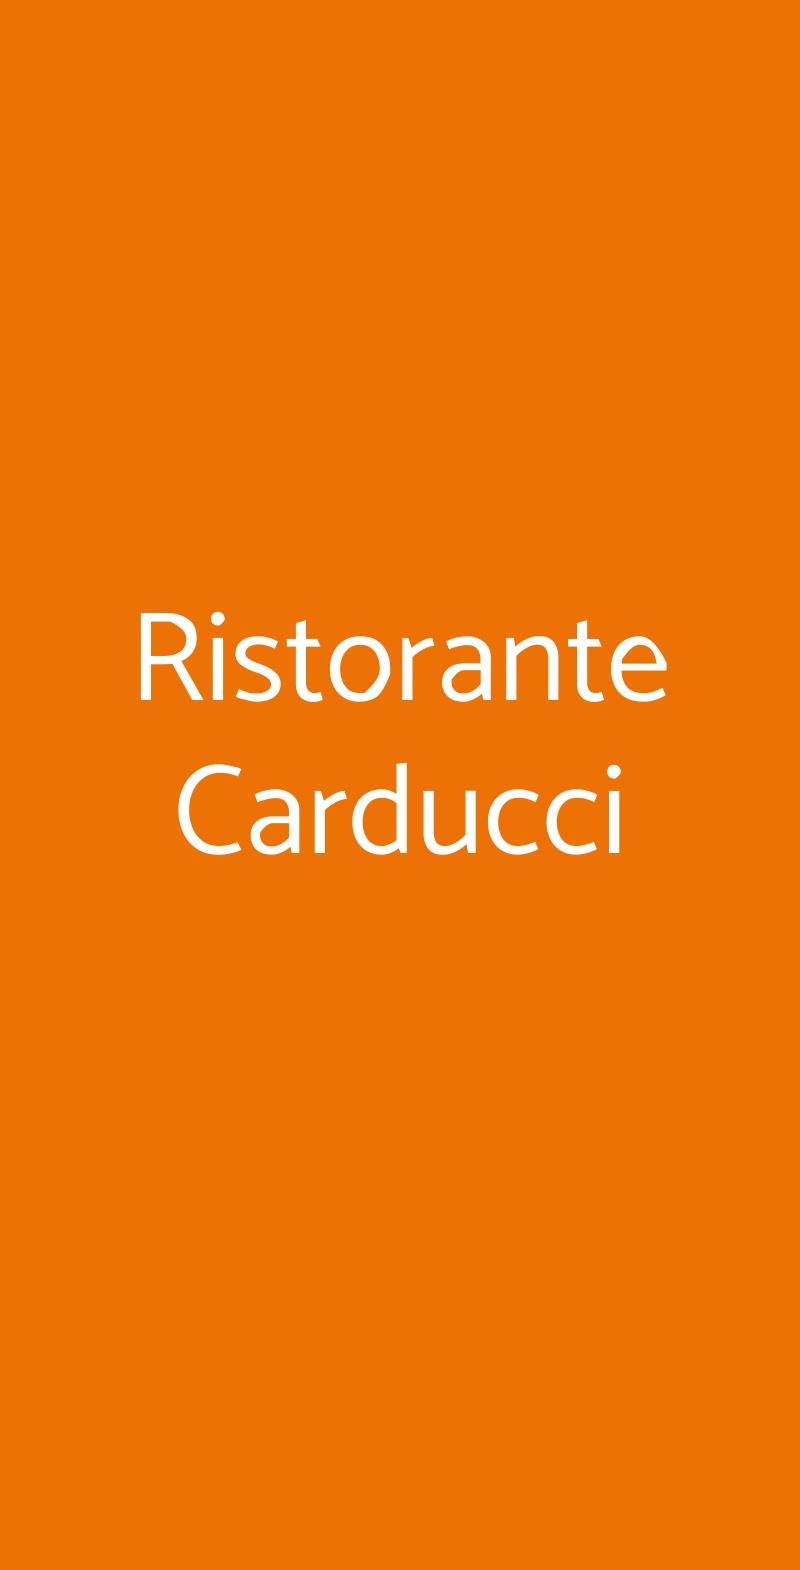 Ristorante Carducci Bari menù 1 pagina